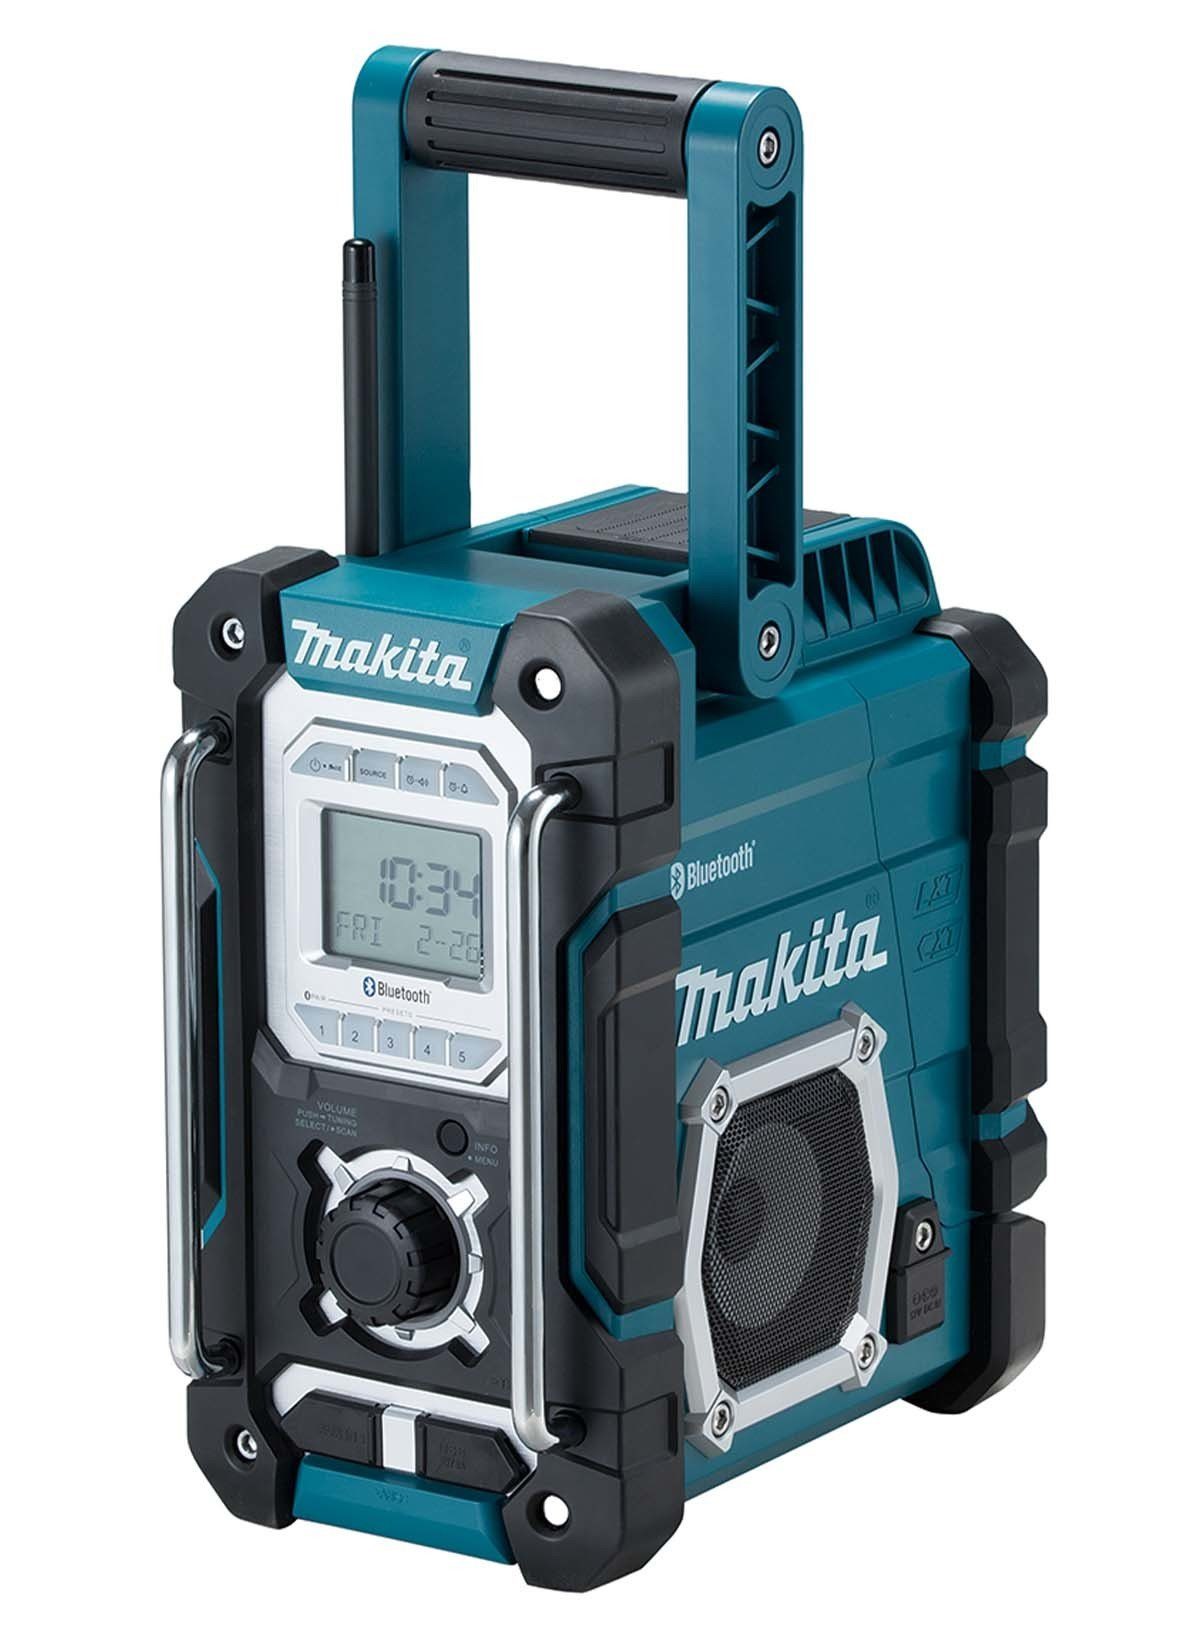 Makita »DMR 108« Baustellenradio (Bluetooth, mit Spritzschutz bis  Schutzklasse IP64 und Weckfunktion, inklusive Aux-Anschluss für  MP3-Kompatibilität und einen USB-Anschluss um Ihr Mobilgerät zu laden)  online kaufen | OTTO